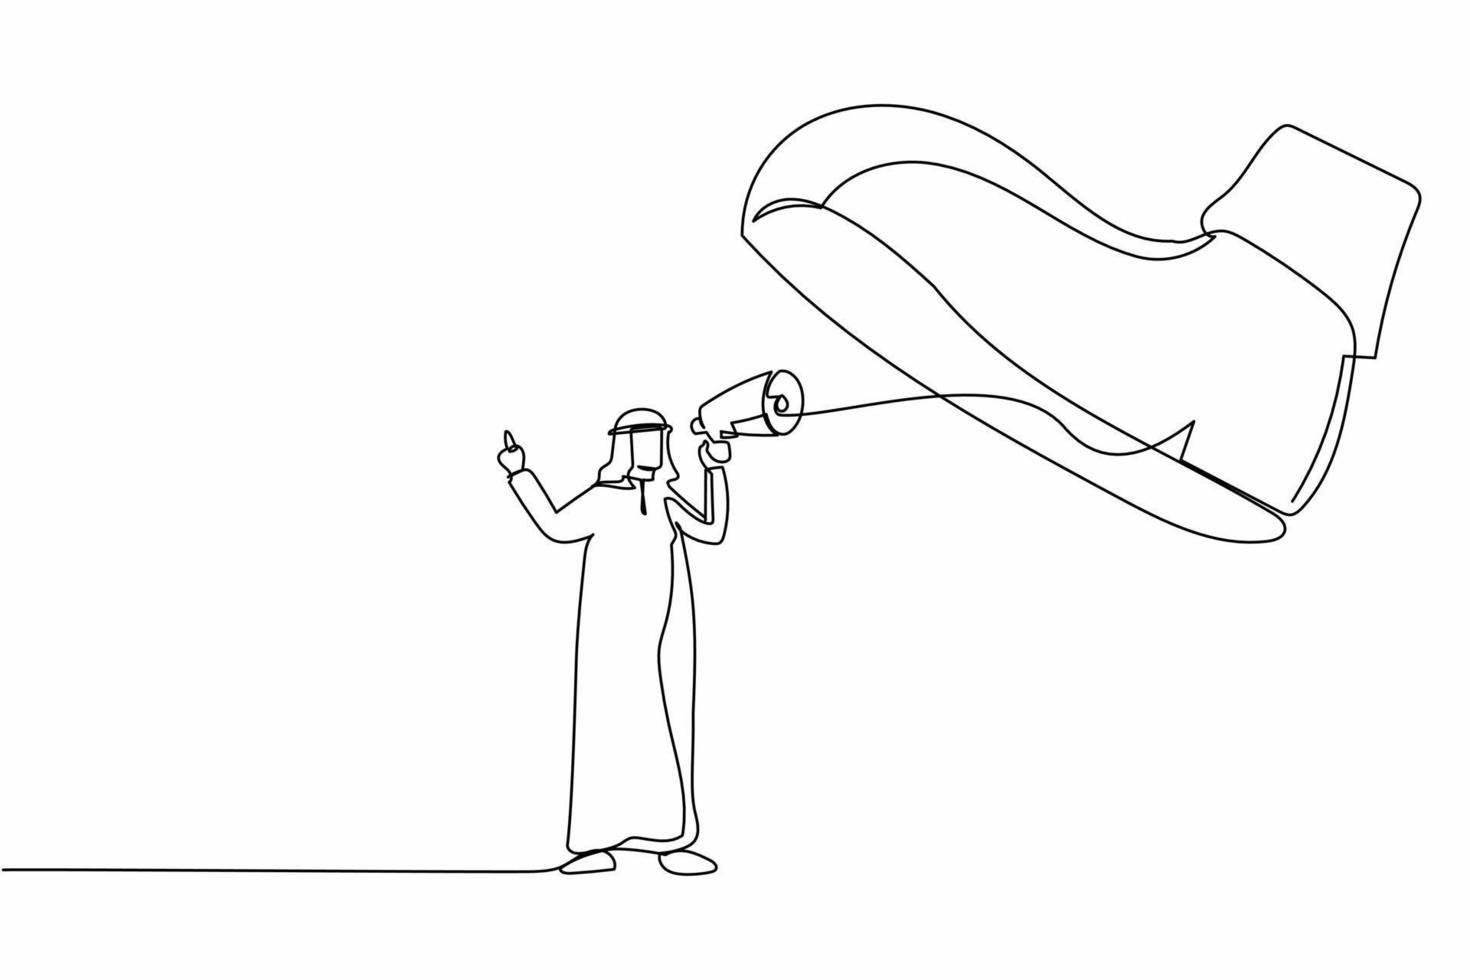 única linha contínua desenho empresário árabe ativo falando com megafone sob sapato gigante. bota pisando em empresário. metáfora do minimalismo. uma linha desenhar ilustração em vetor design gráfico